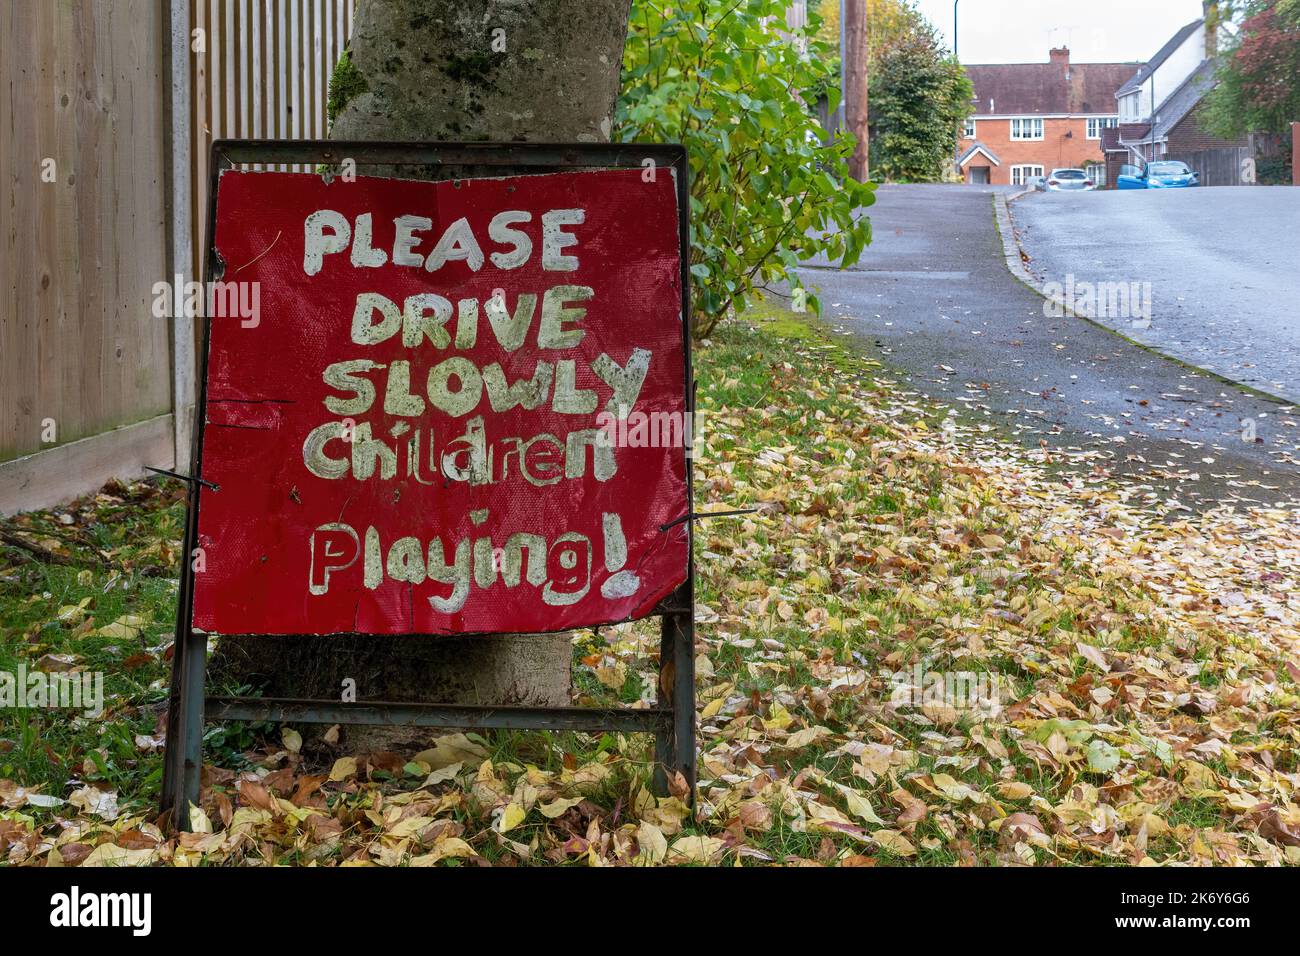 Veuillez conduire lentement les enfants jouant, le panneau rouge de la route dans la zone résidentielle, Royaume-Uni Banque D'Images